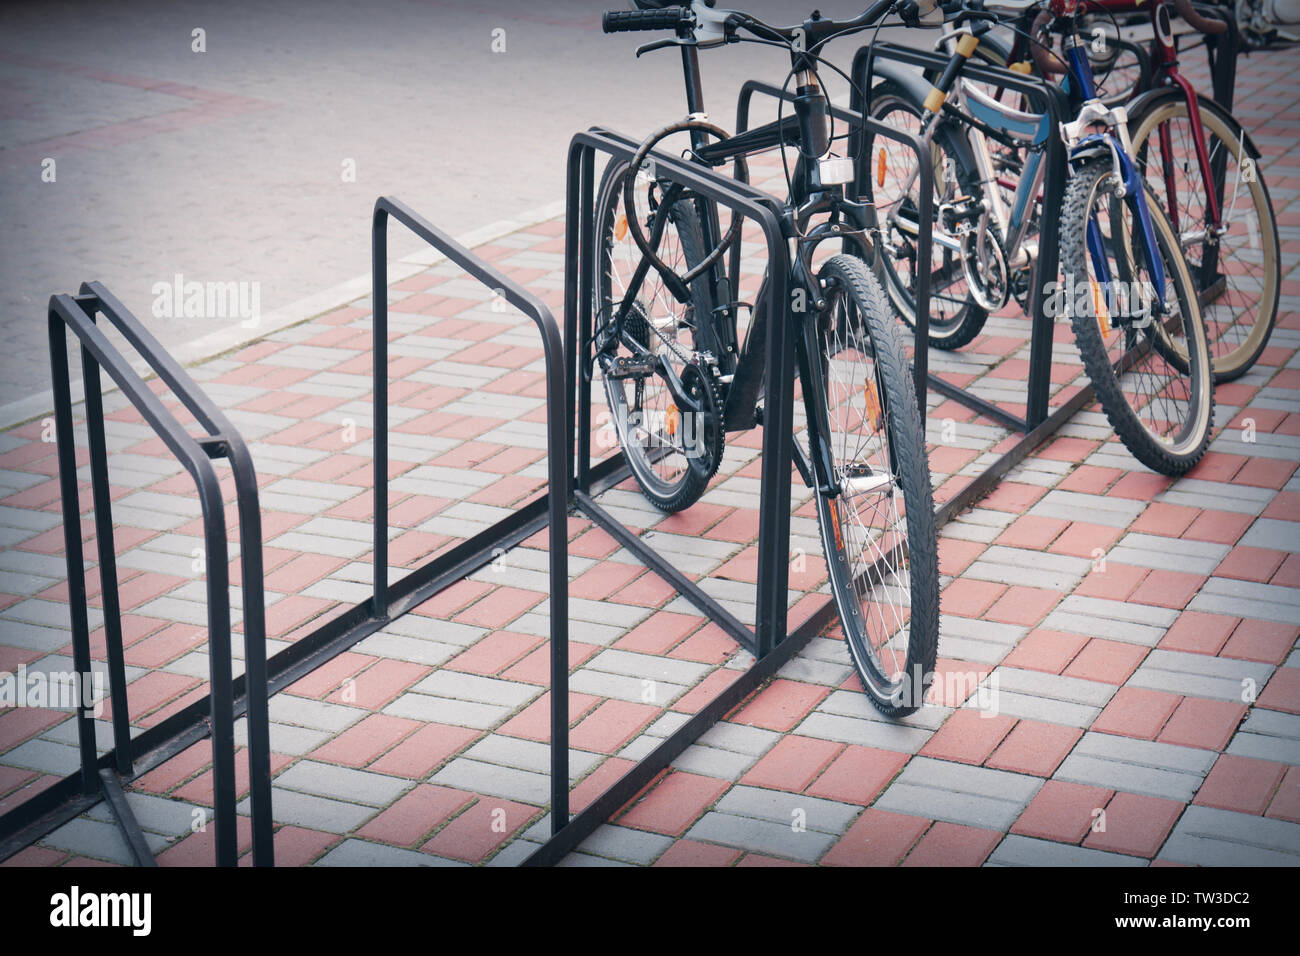 Porte-vélo avec des vélos sur le trottoir Photo Stock - Alamy